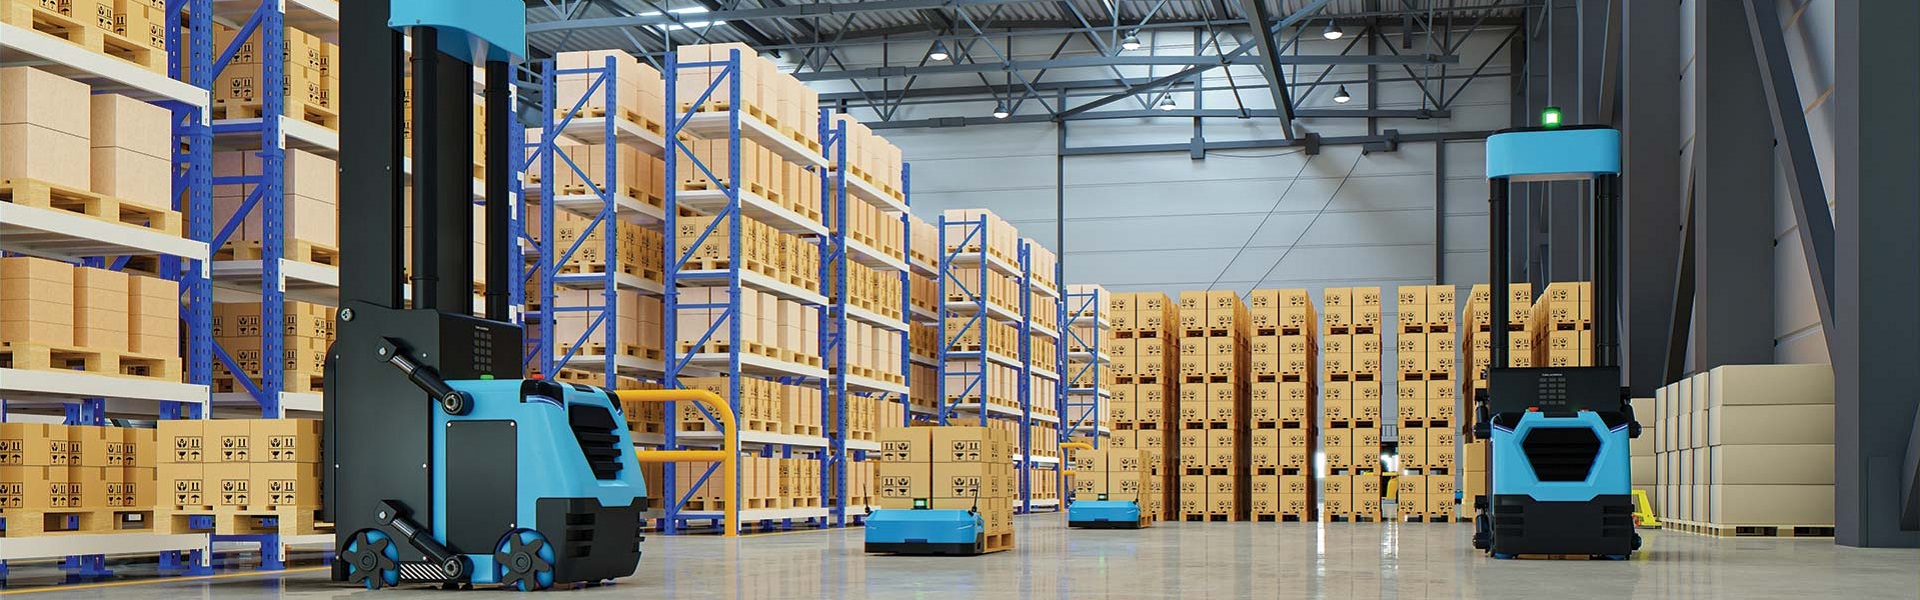 Pallet racks, warehouse shelves, warehouse equipment | Royal